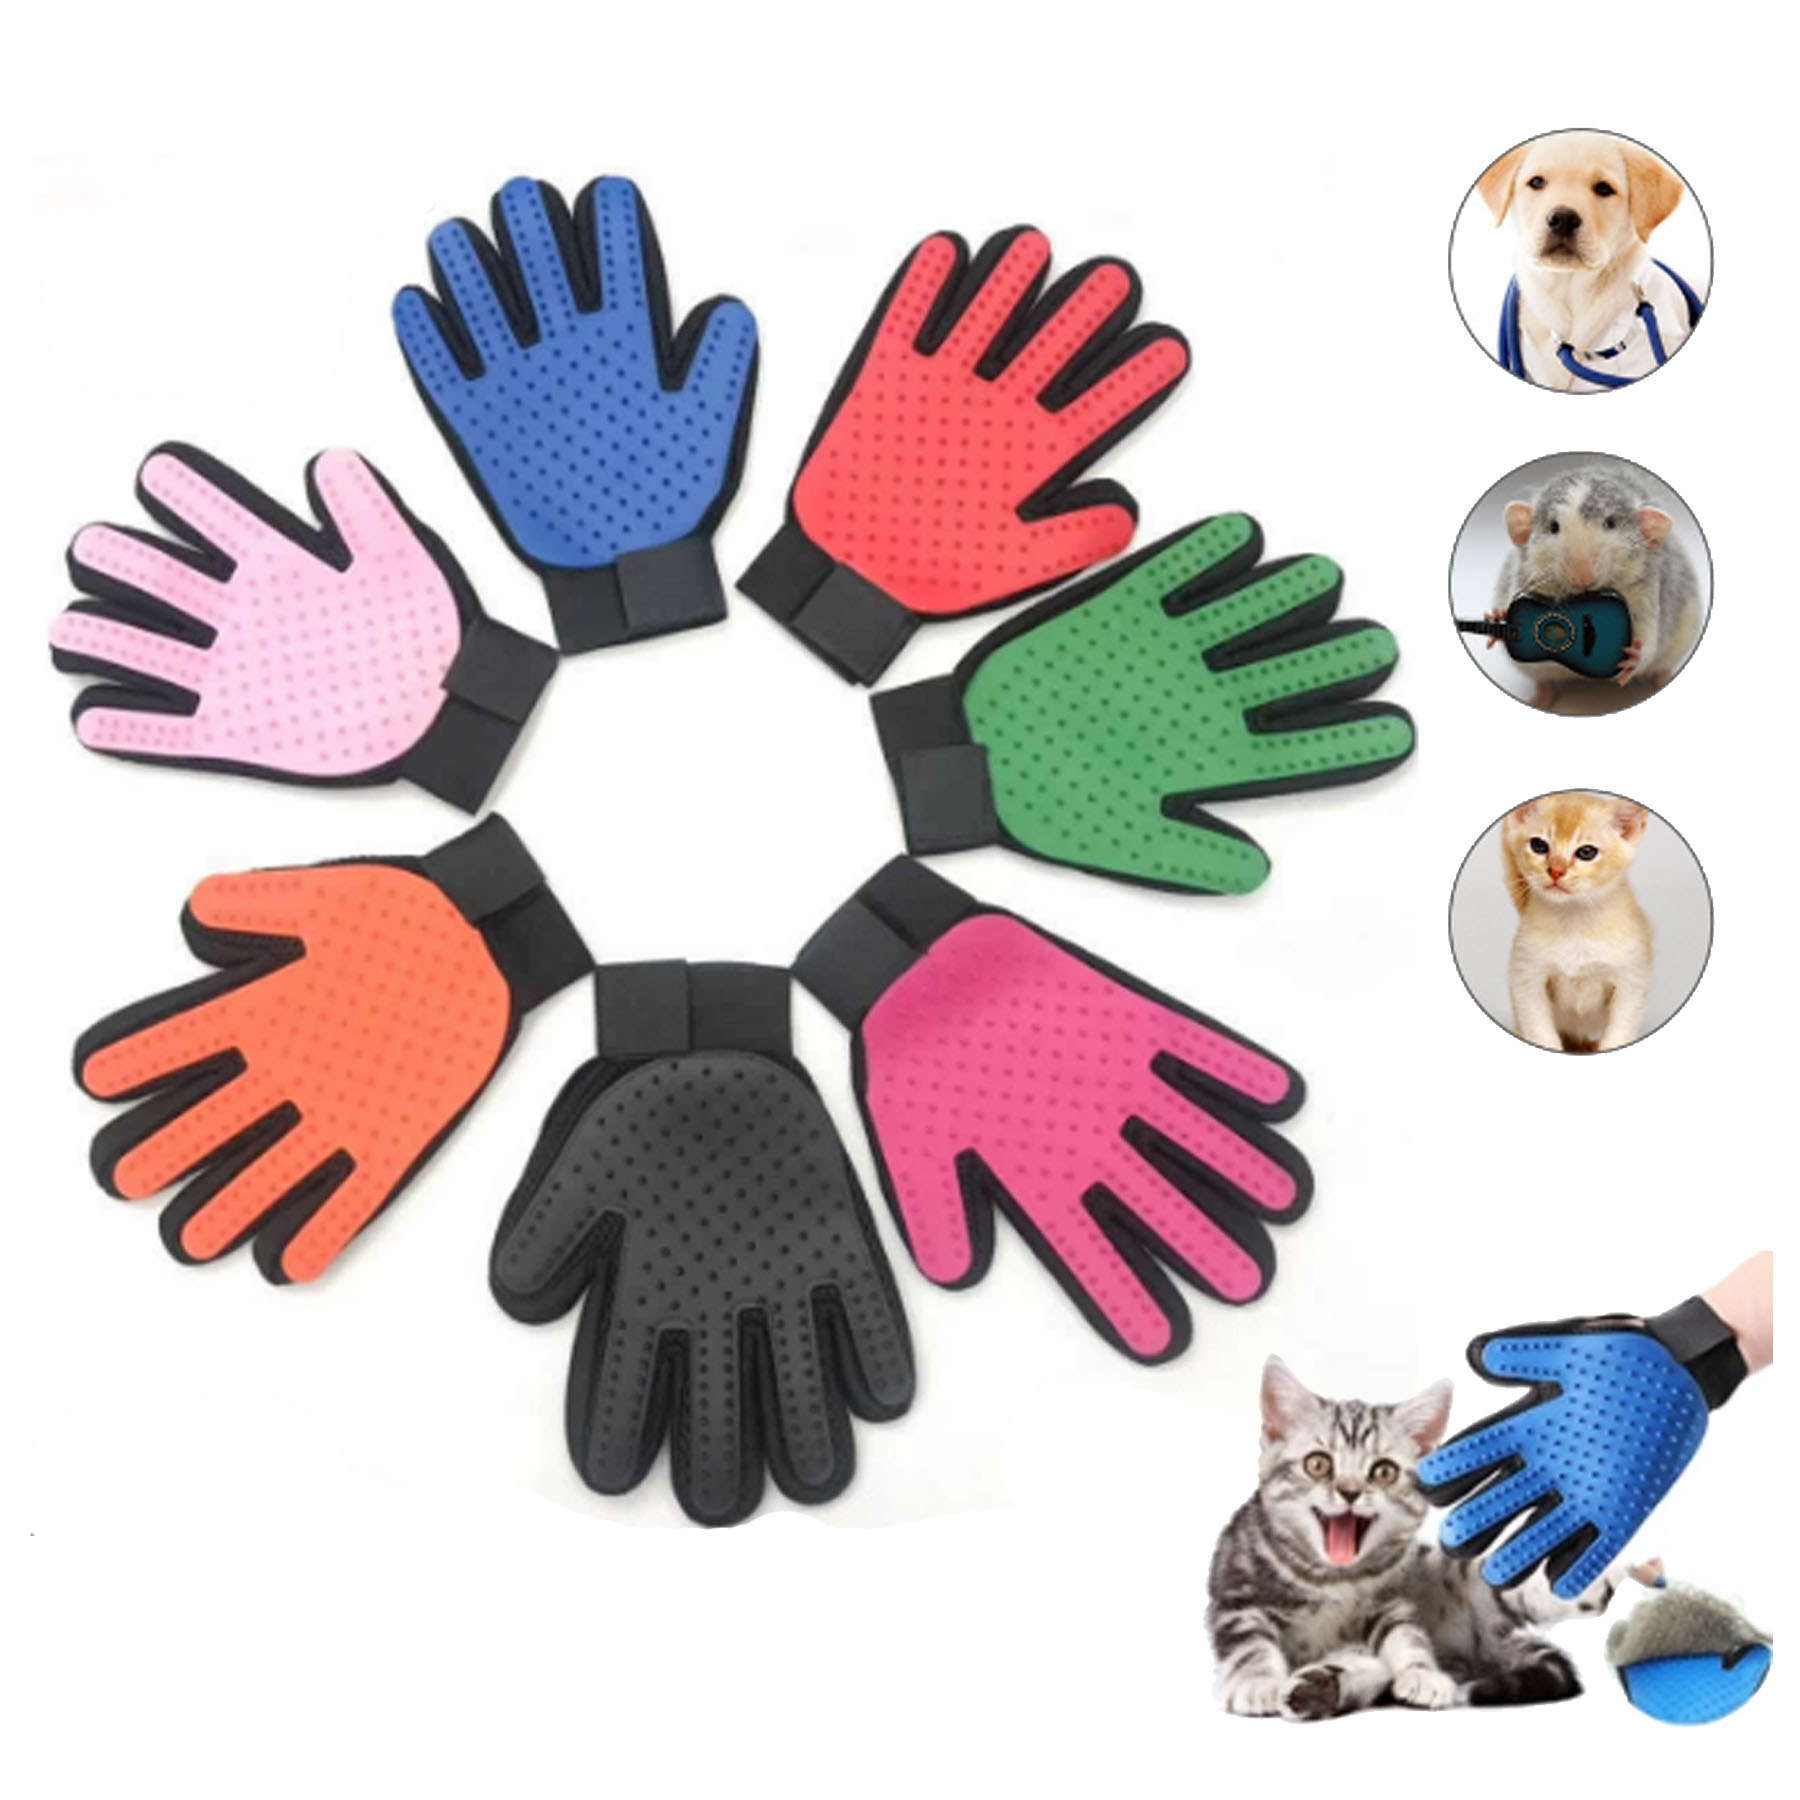 GL-JJJ1018 Pet Grooming Glove